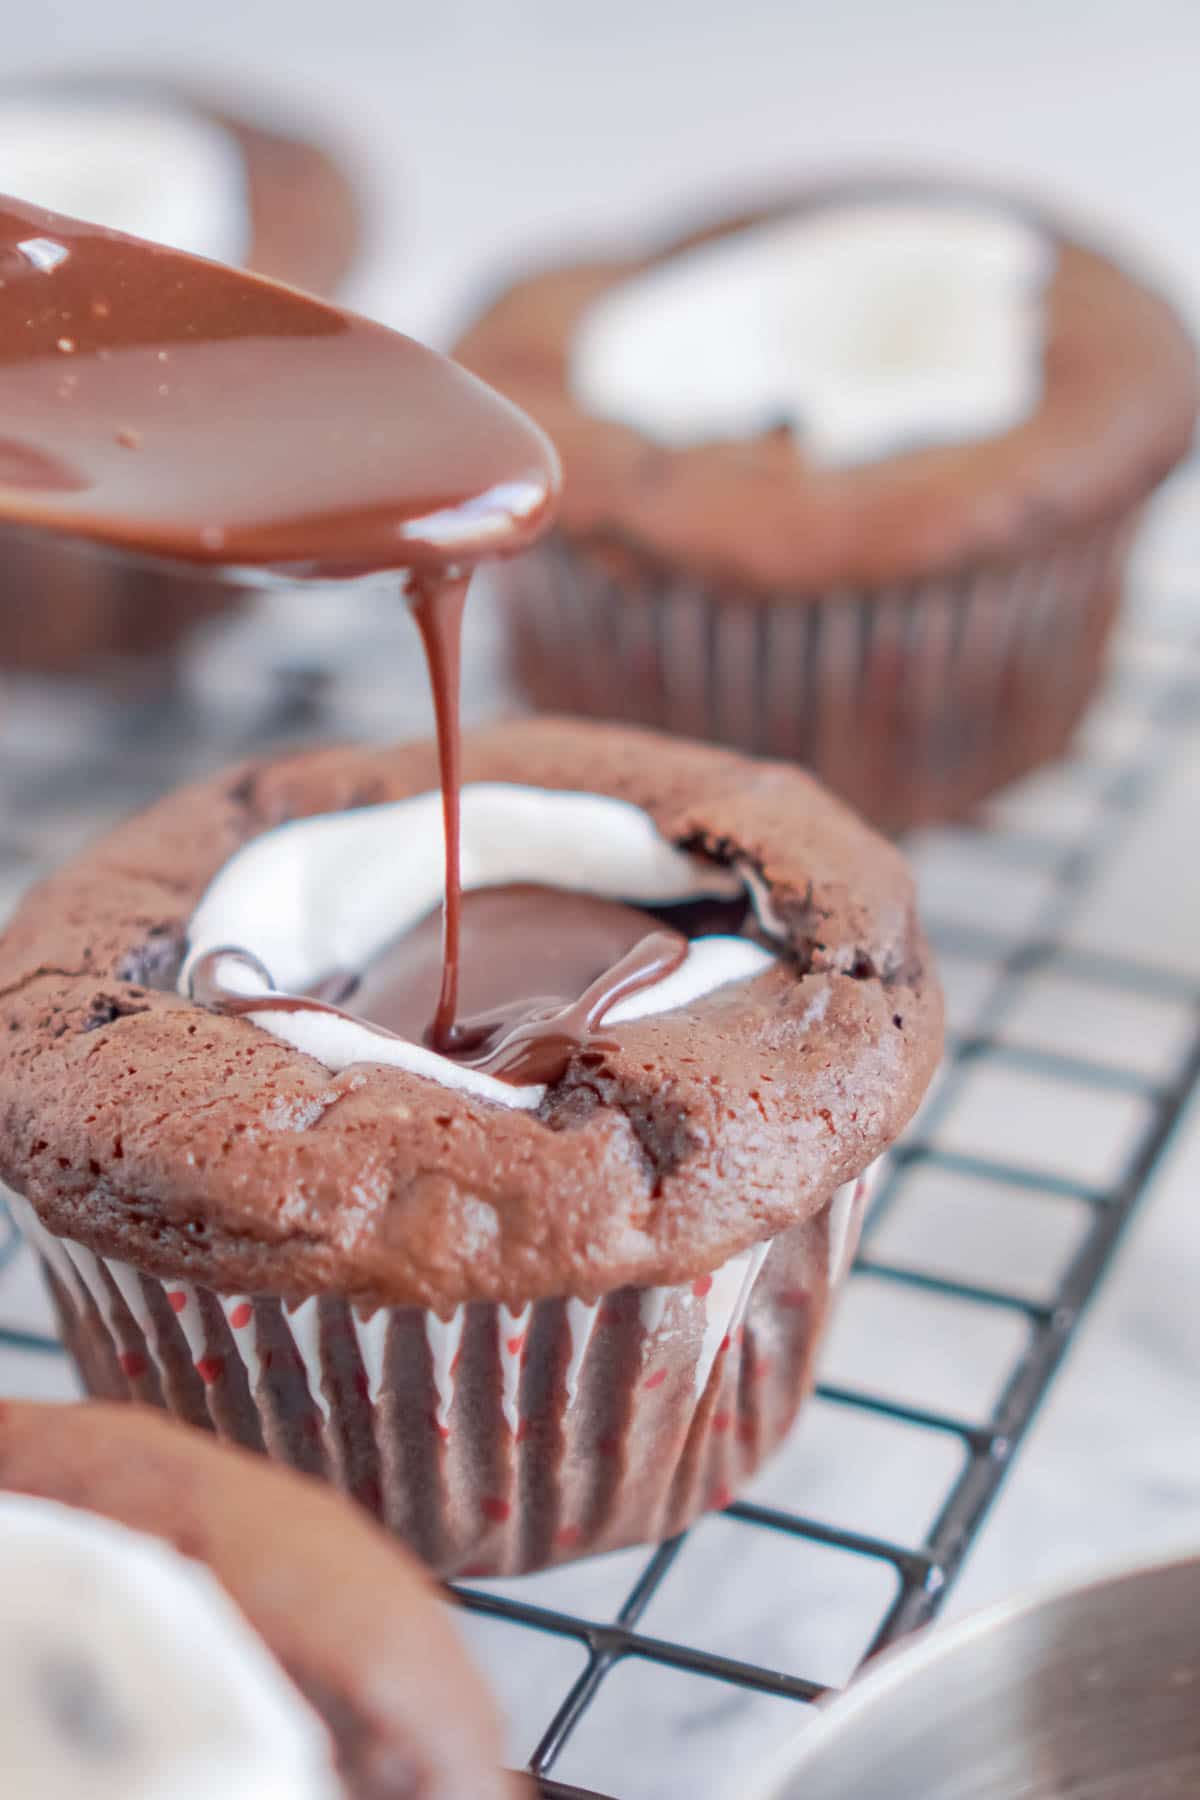 Cuchara vertiendo glaseado de chocolate en cupcakes de chocolate